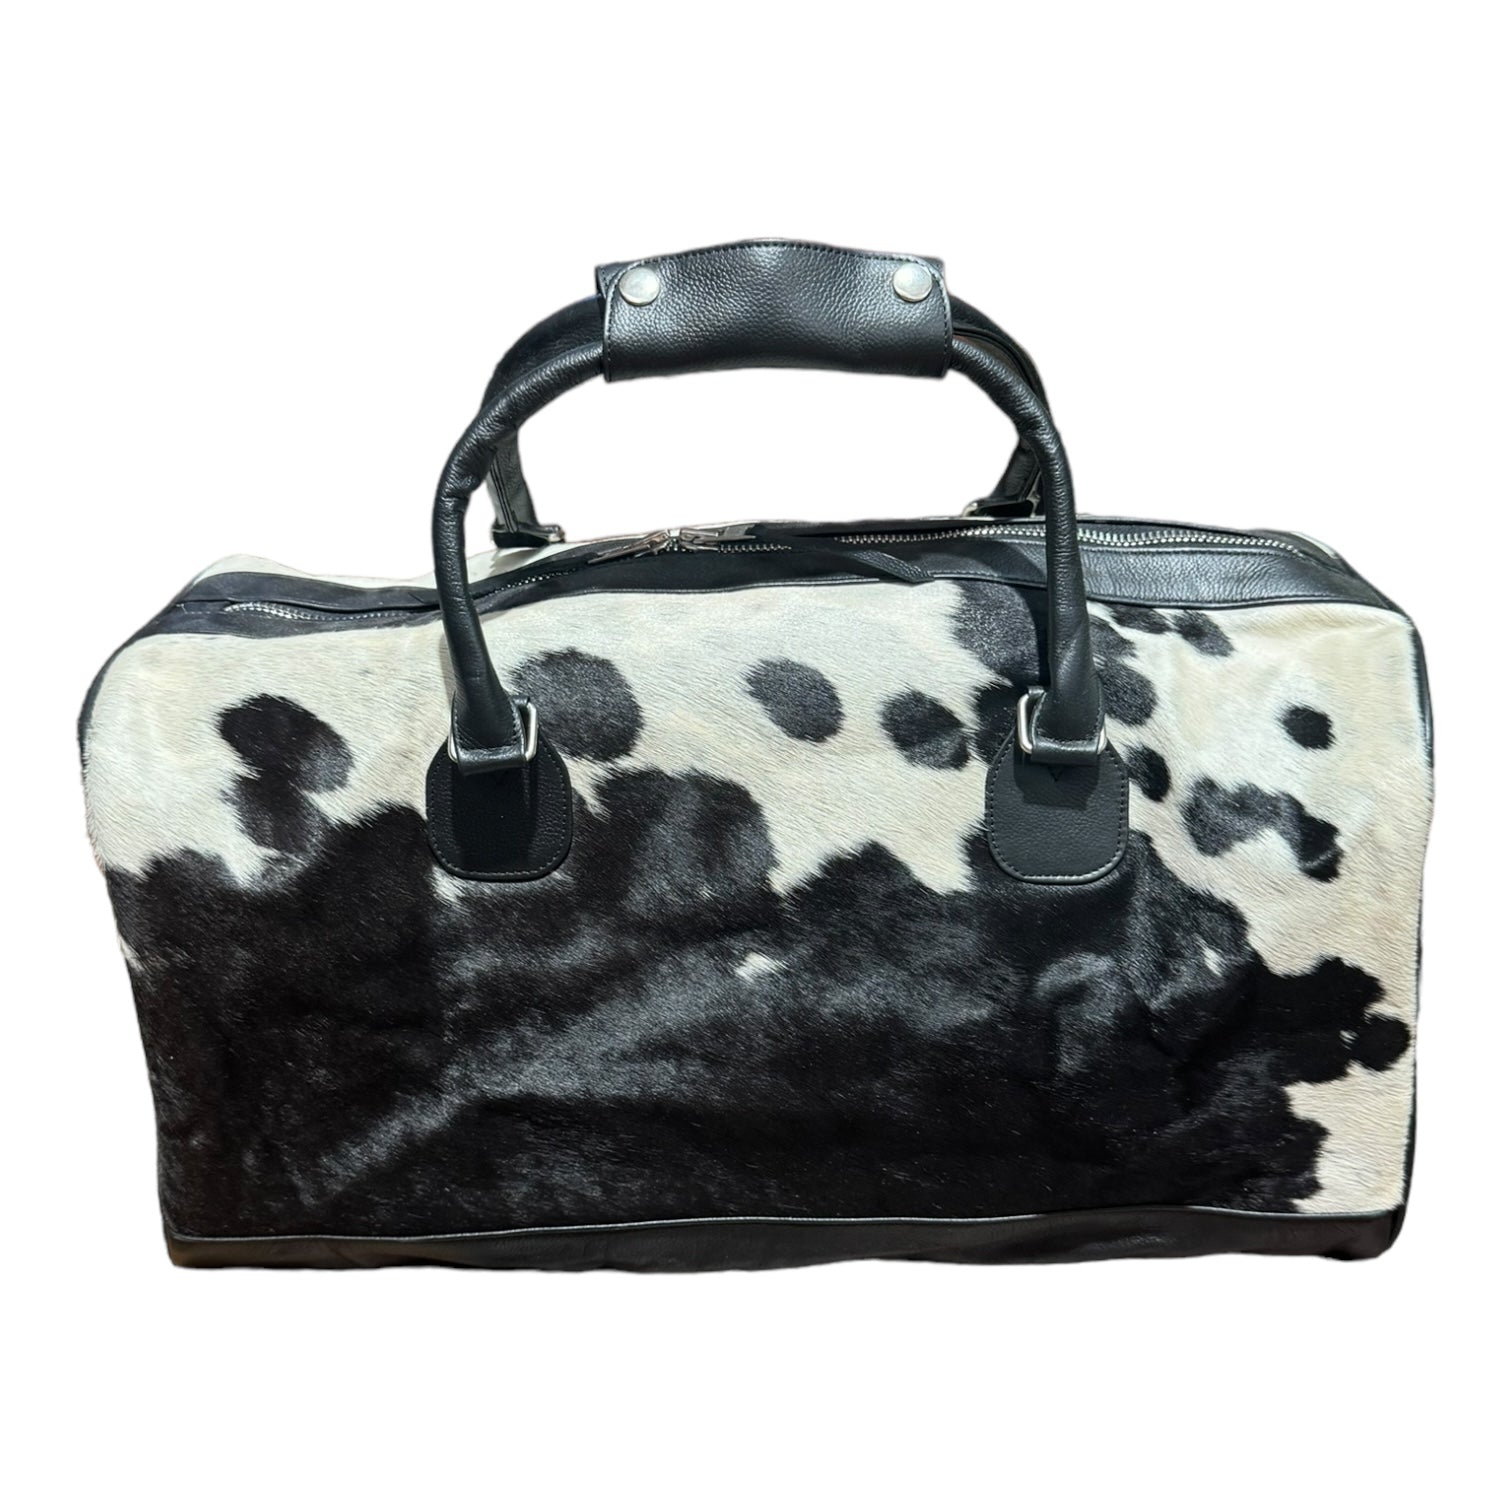 ‘Texas’ Cowhide Travel / Weekender Bag - Black